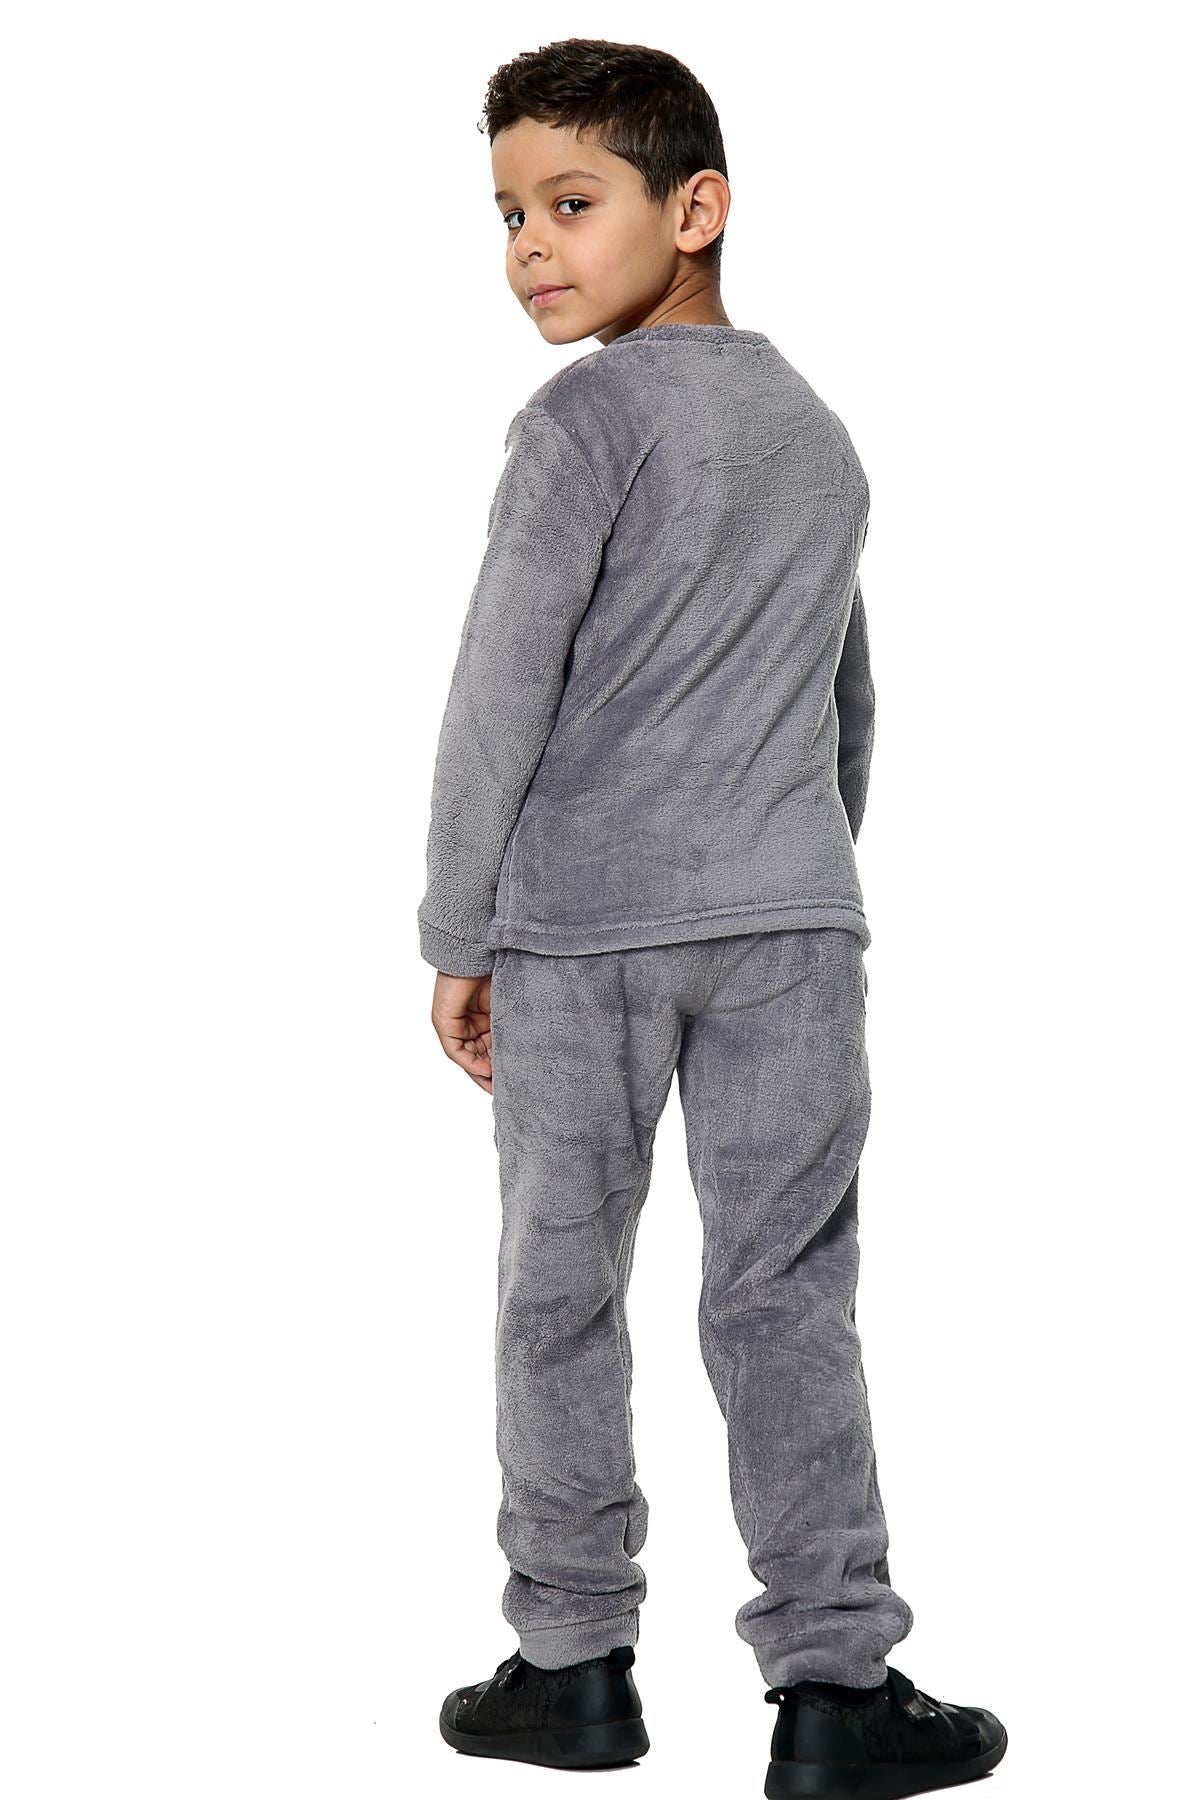 Girls Boys Loungewear Flannel Fleece Nightwear PJS.